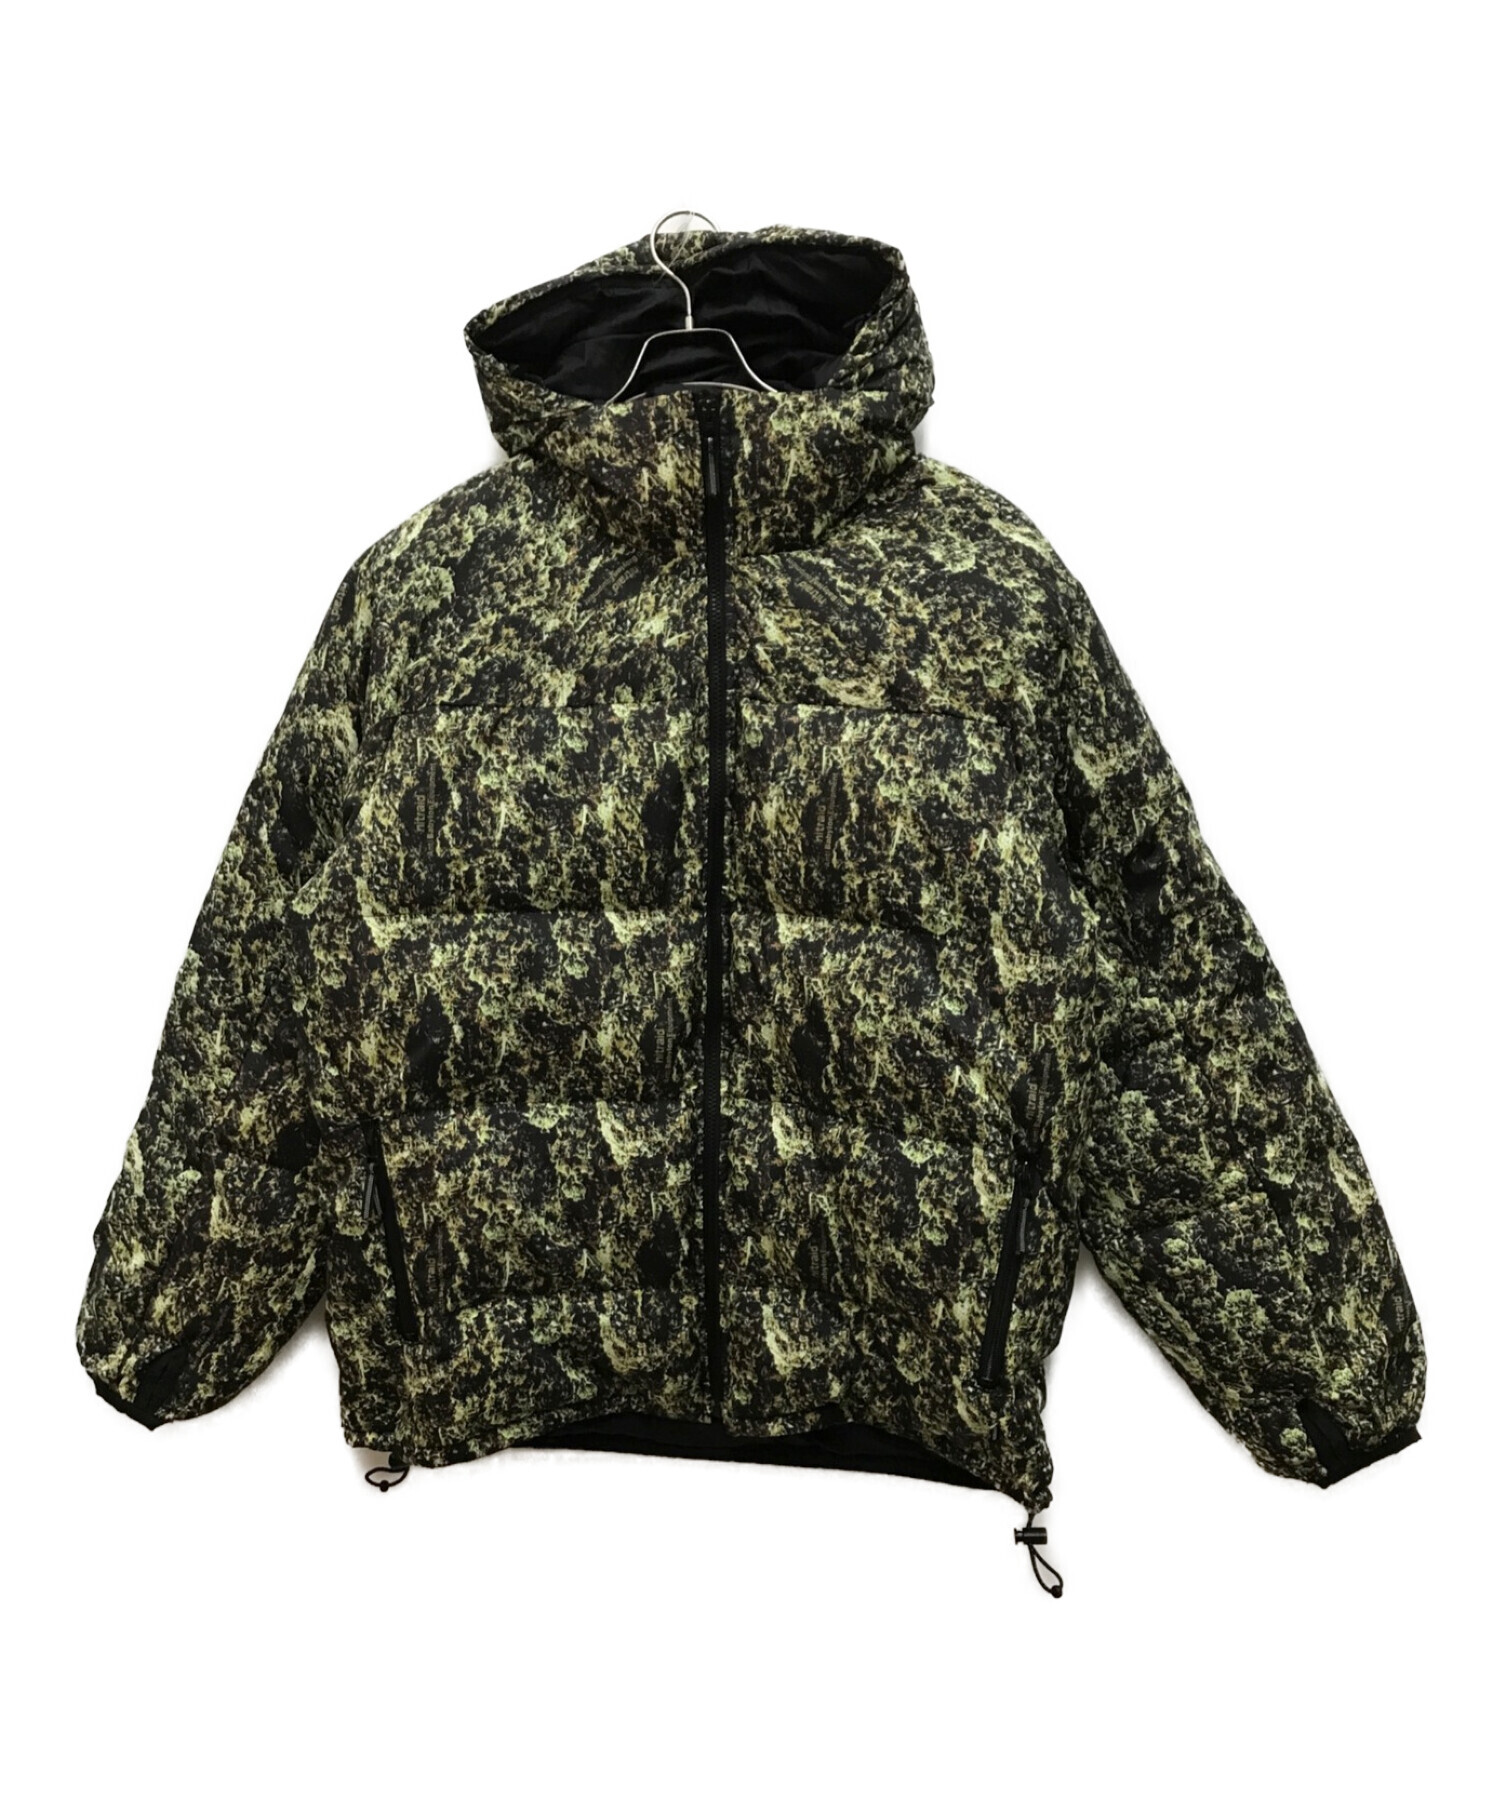 NITRAID (ナイトレイド) ダウンジャケット ブラック×グリーン サイズ:XL